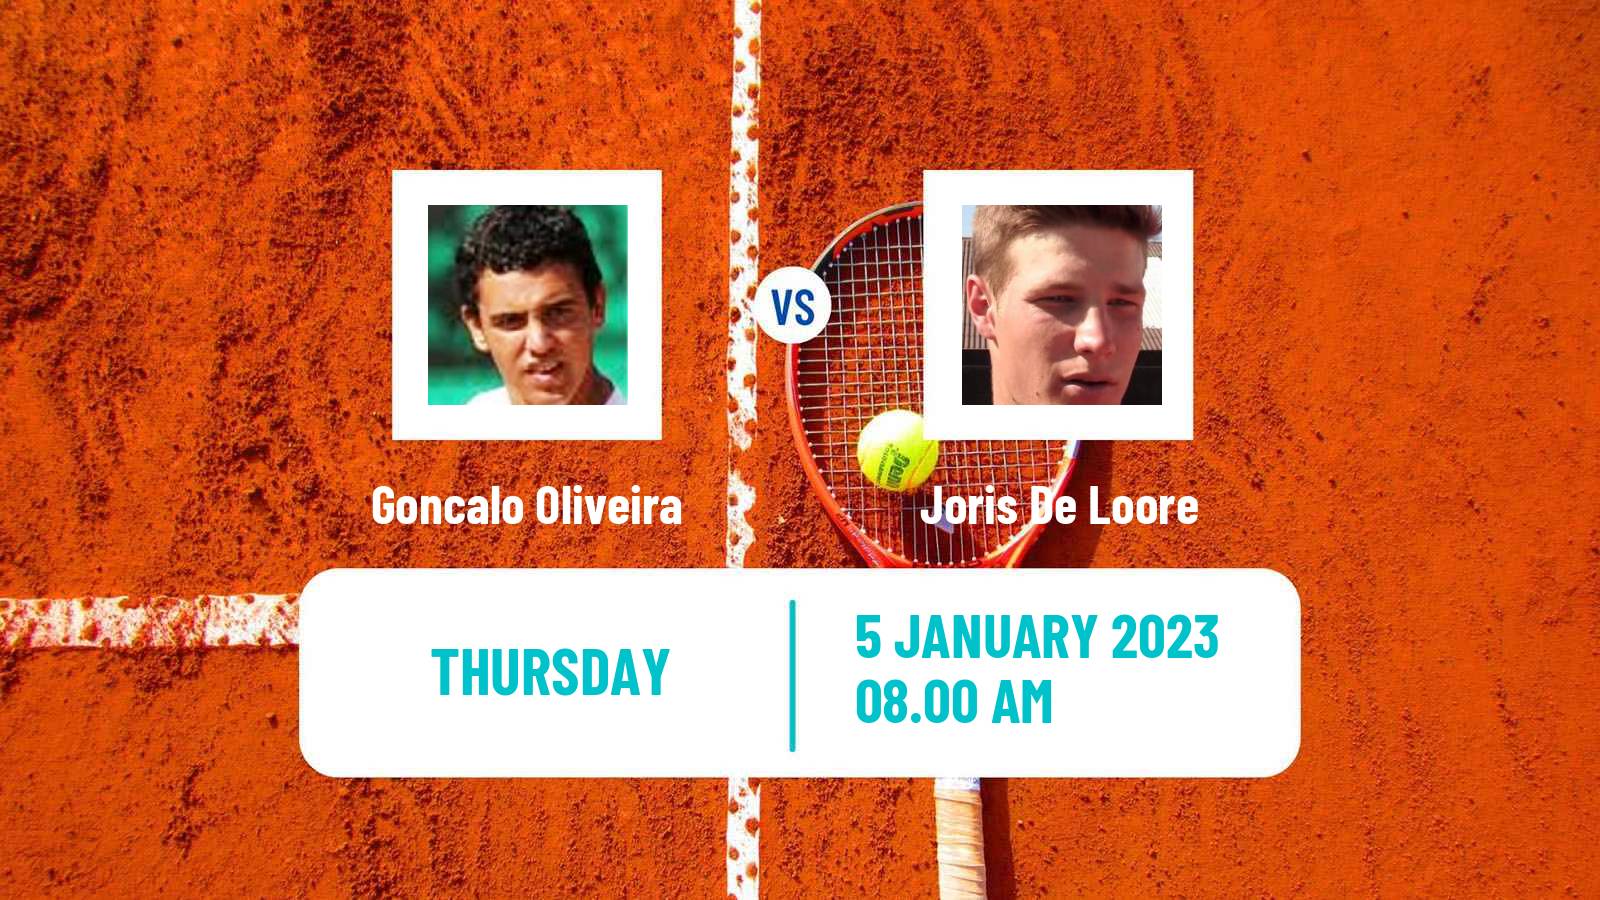 Tennis ATP Challenger Goncalo Oliveira - Joris De Loore